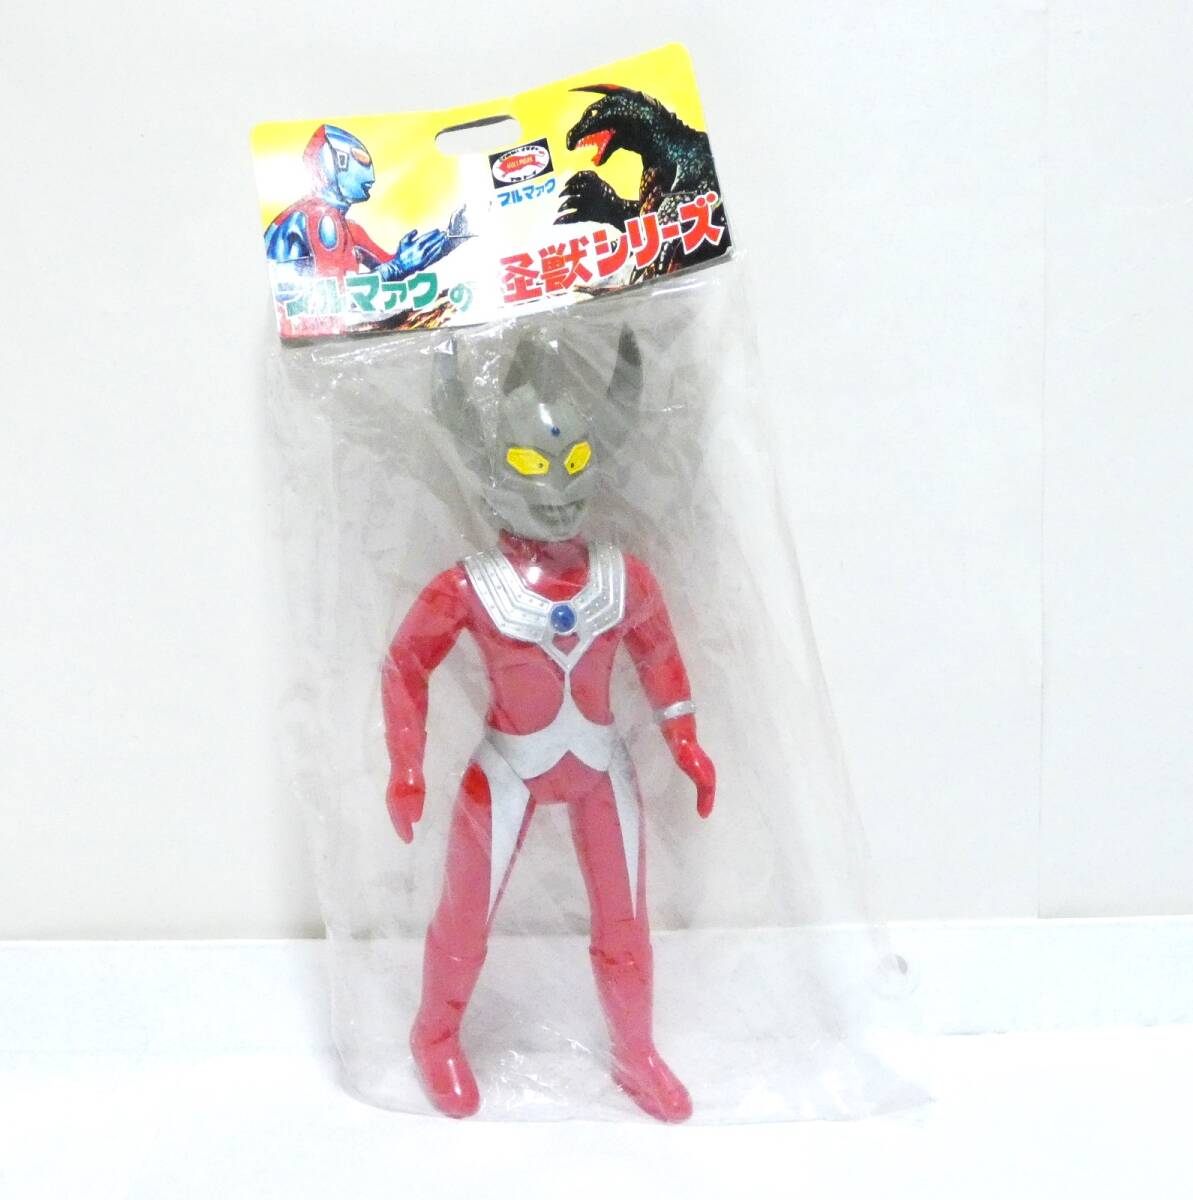 6977Y/ нераспечатанный bruma.k Ultraman Taro 2 период версия No.2154 переиздание монстр серии sofvi иен . Pro Bandai B-CLUB сделано в Японии 